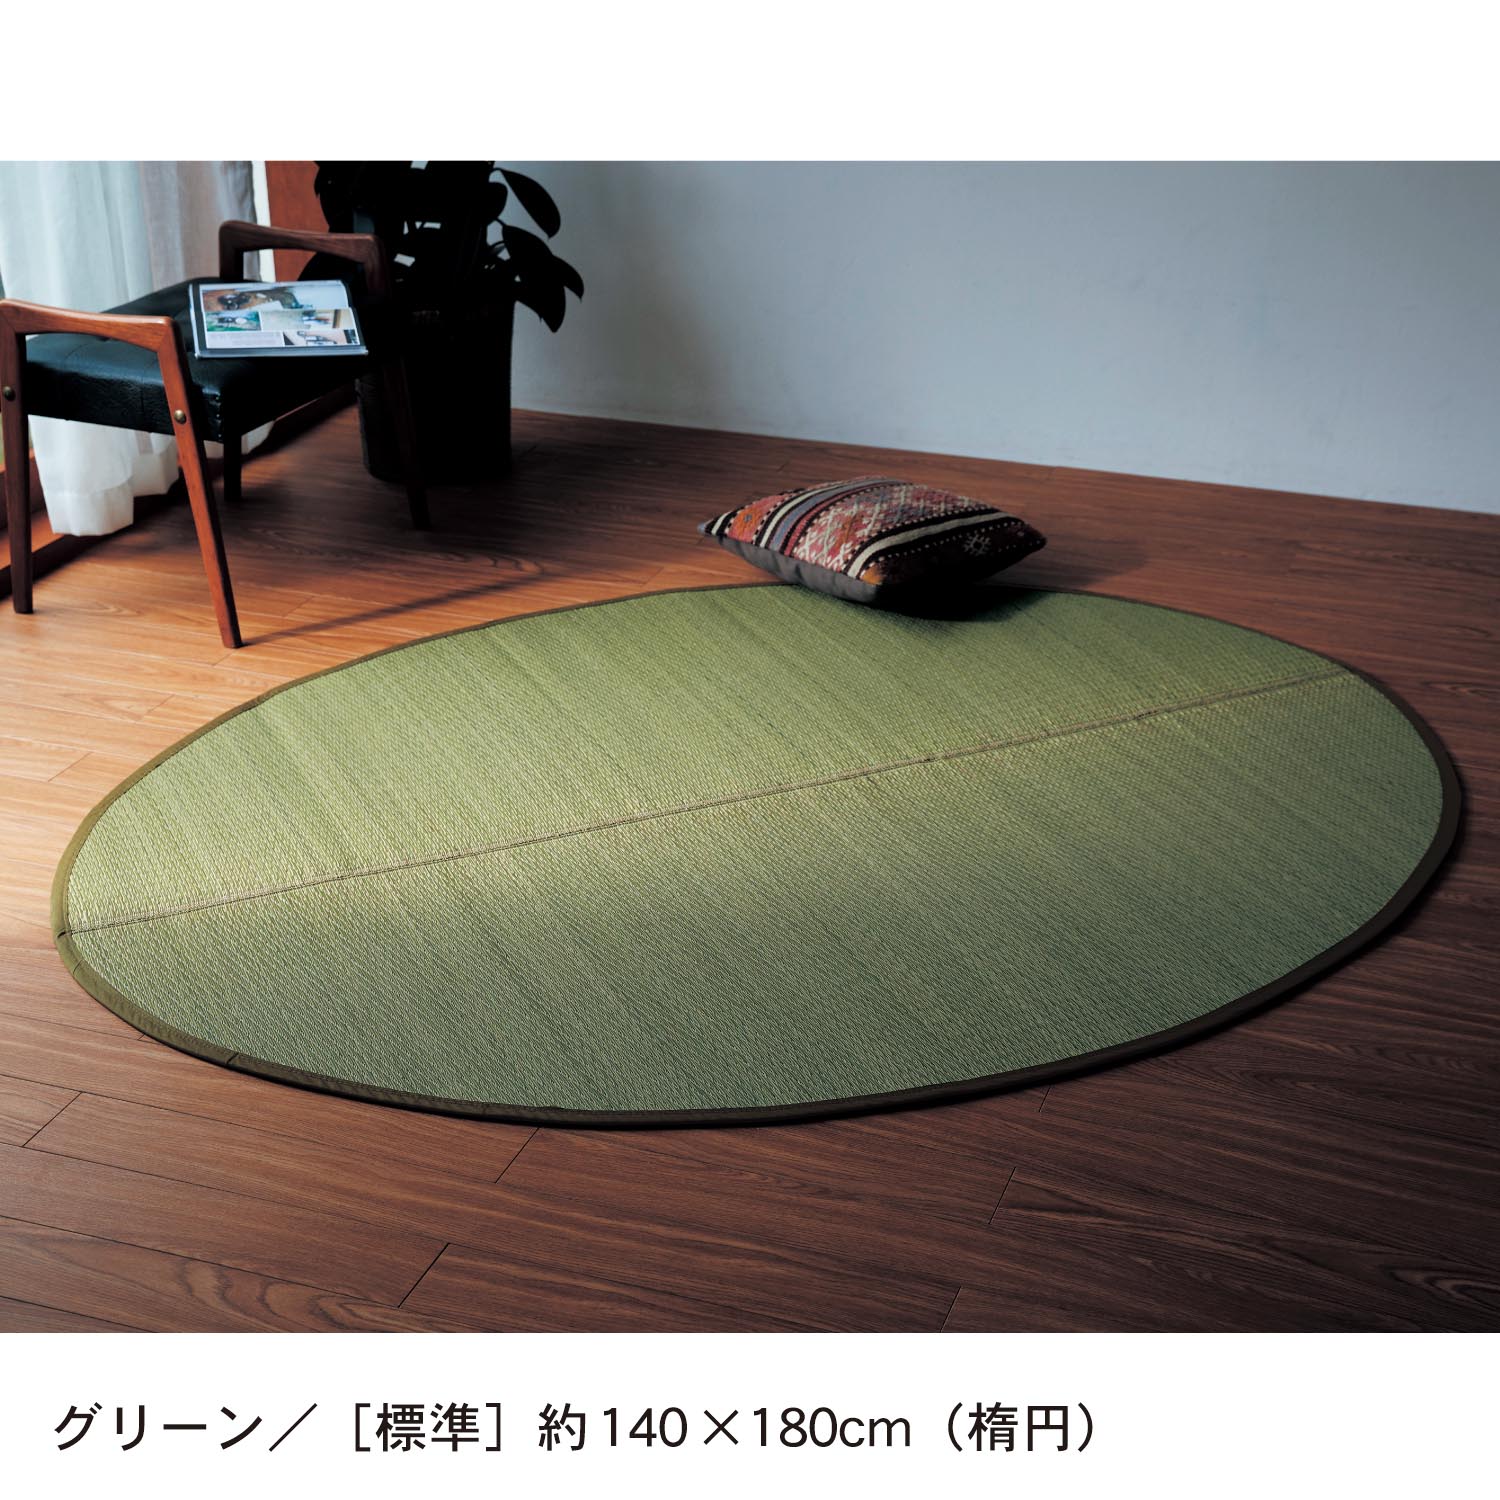 ベルメゾン 厚みが選べる多サイズのウレタン貼りい草ラグ[日本製] ベージュ [ボリューム]約176×176(円)([ボリューム]約176×